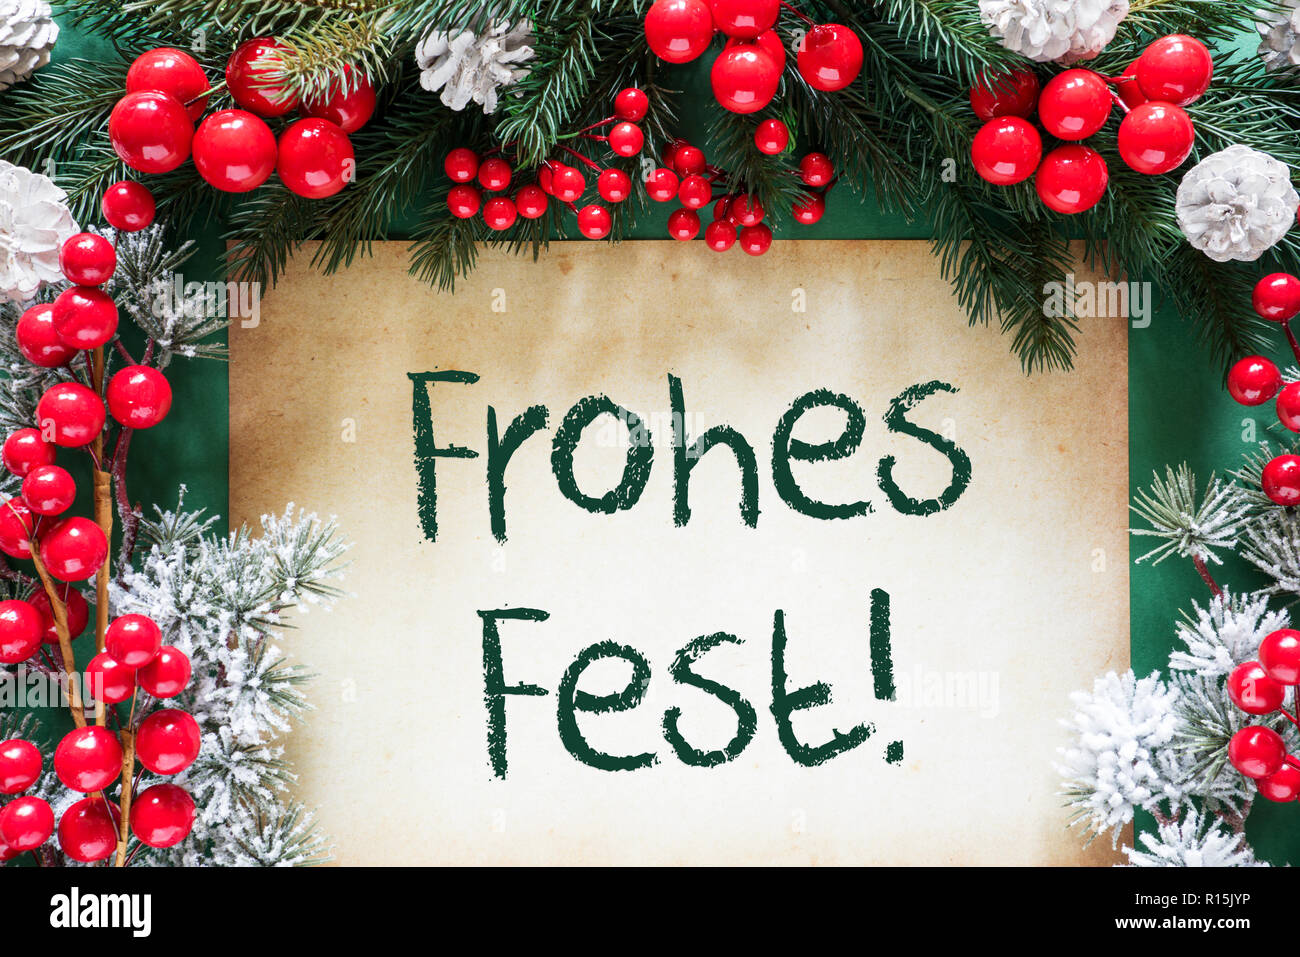 Decorazione di natale, Frohes Fest significa Buon Natale Foto Stock